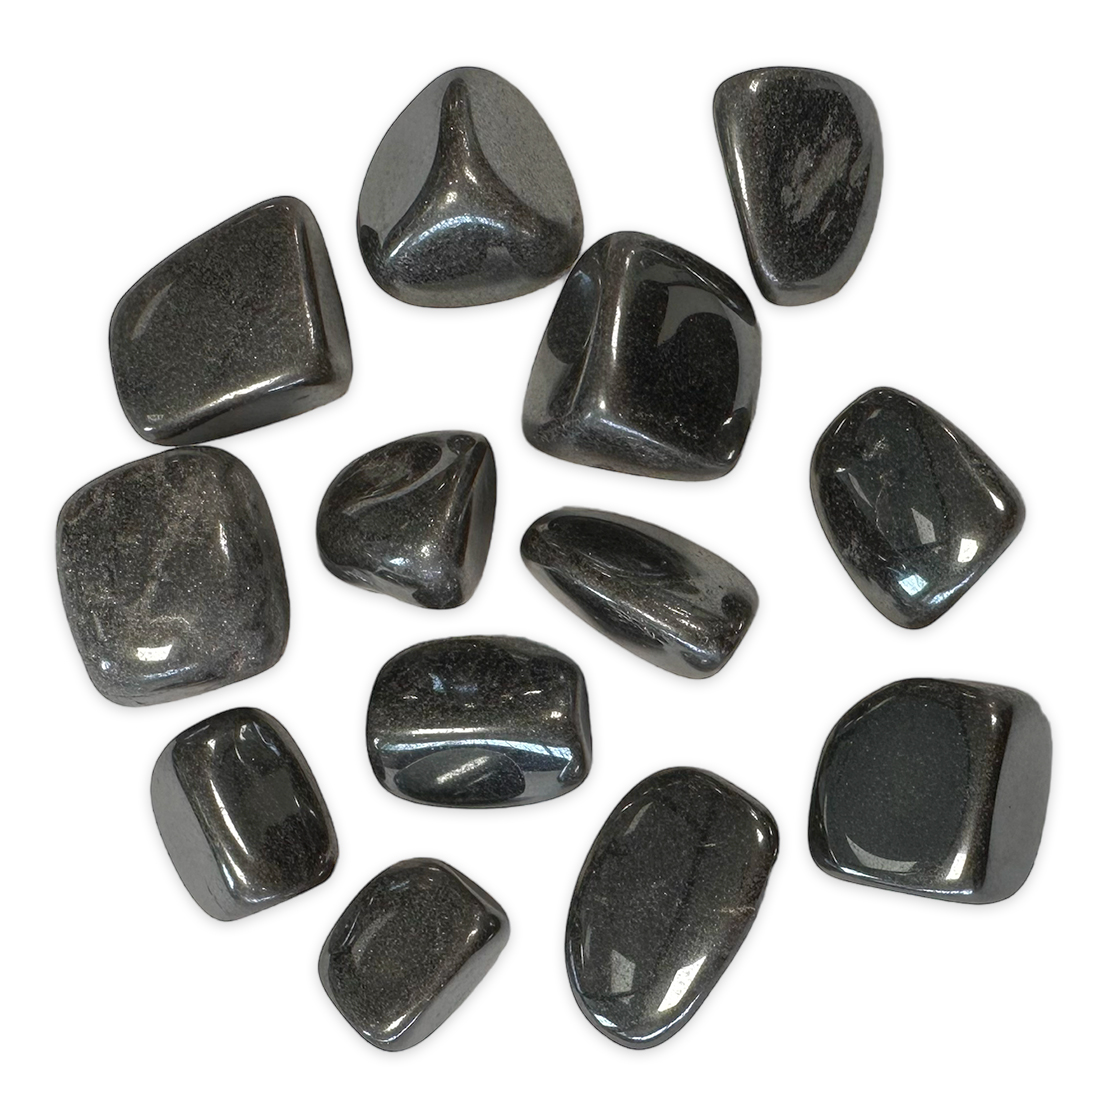 Hematite AB tumbled stone 250g